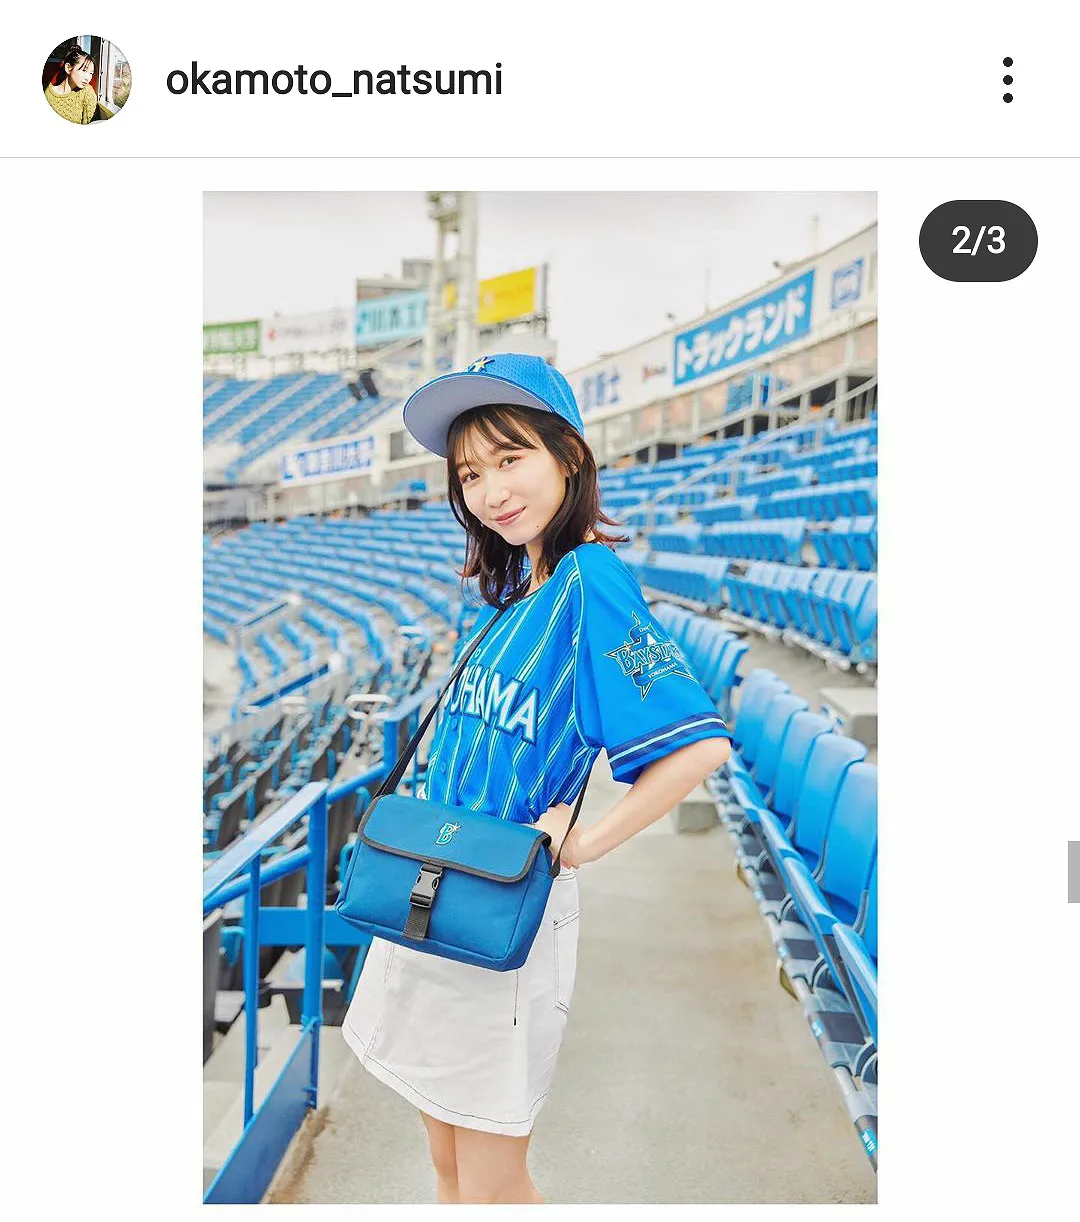 ※画像は岡本夏美(okamoto_natsumi)公式Instagramのスクリーンショット